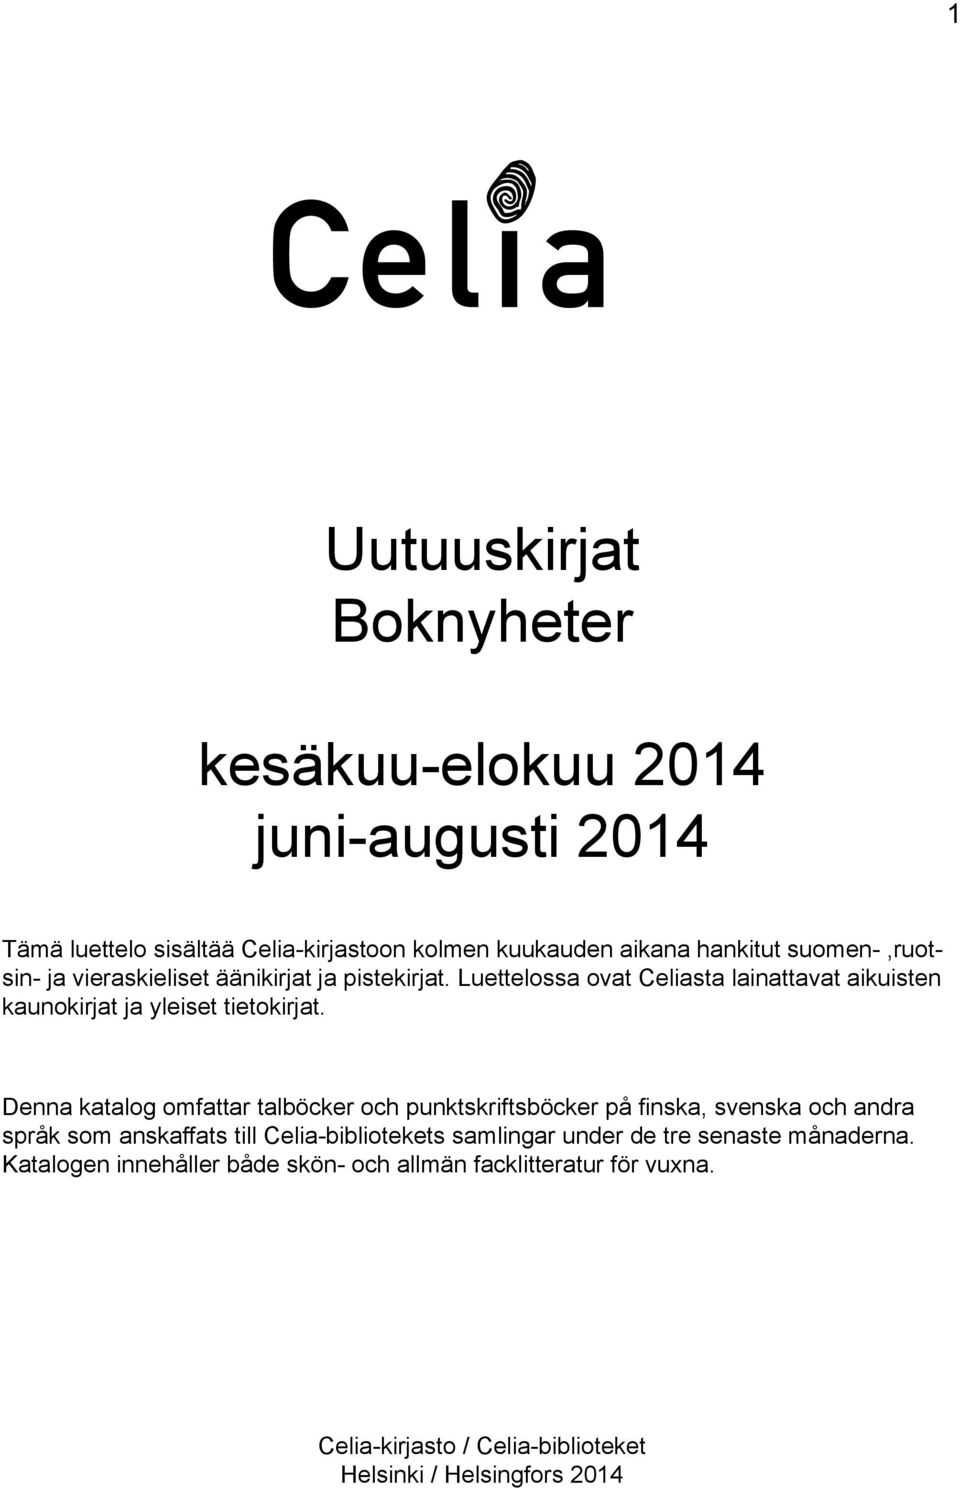 Denna katalog omfattar talböcker och punktskriftsböcker på finska, svenska och andra språk som anskaffats till Celia-bibliotekets samlingar under